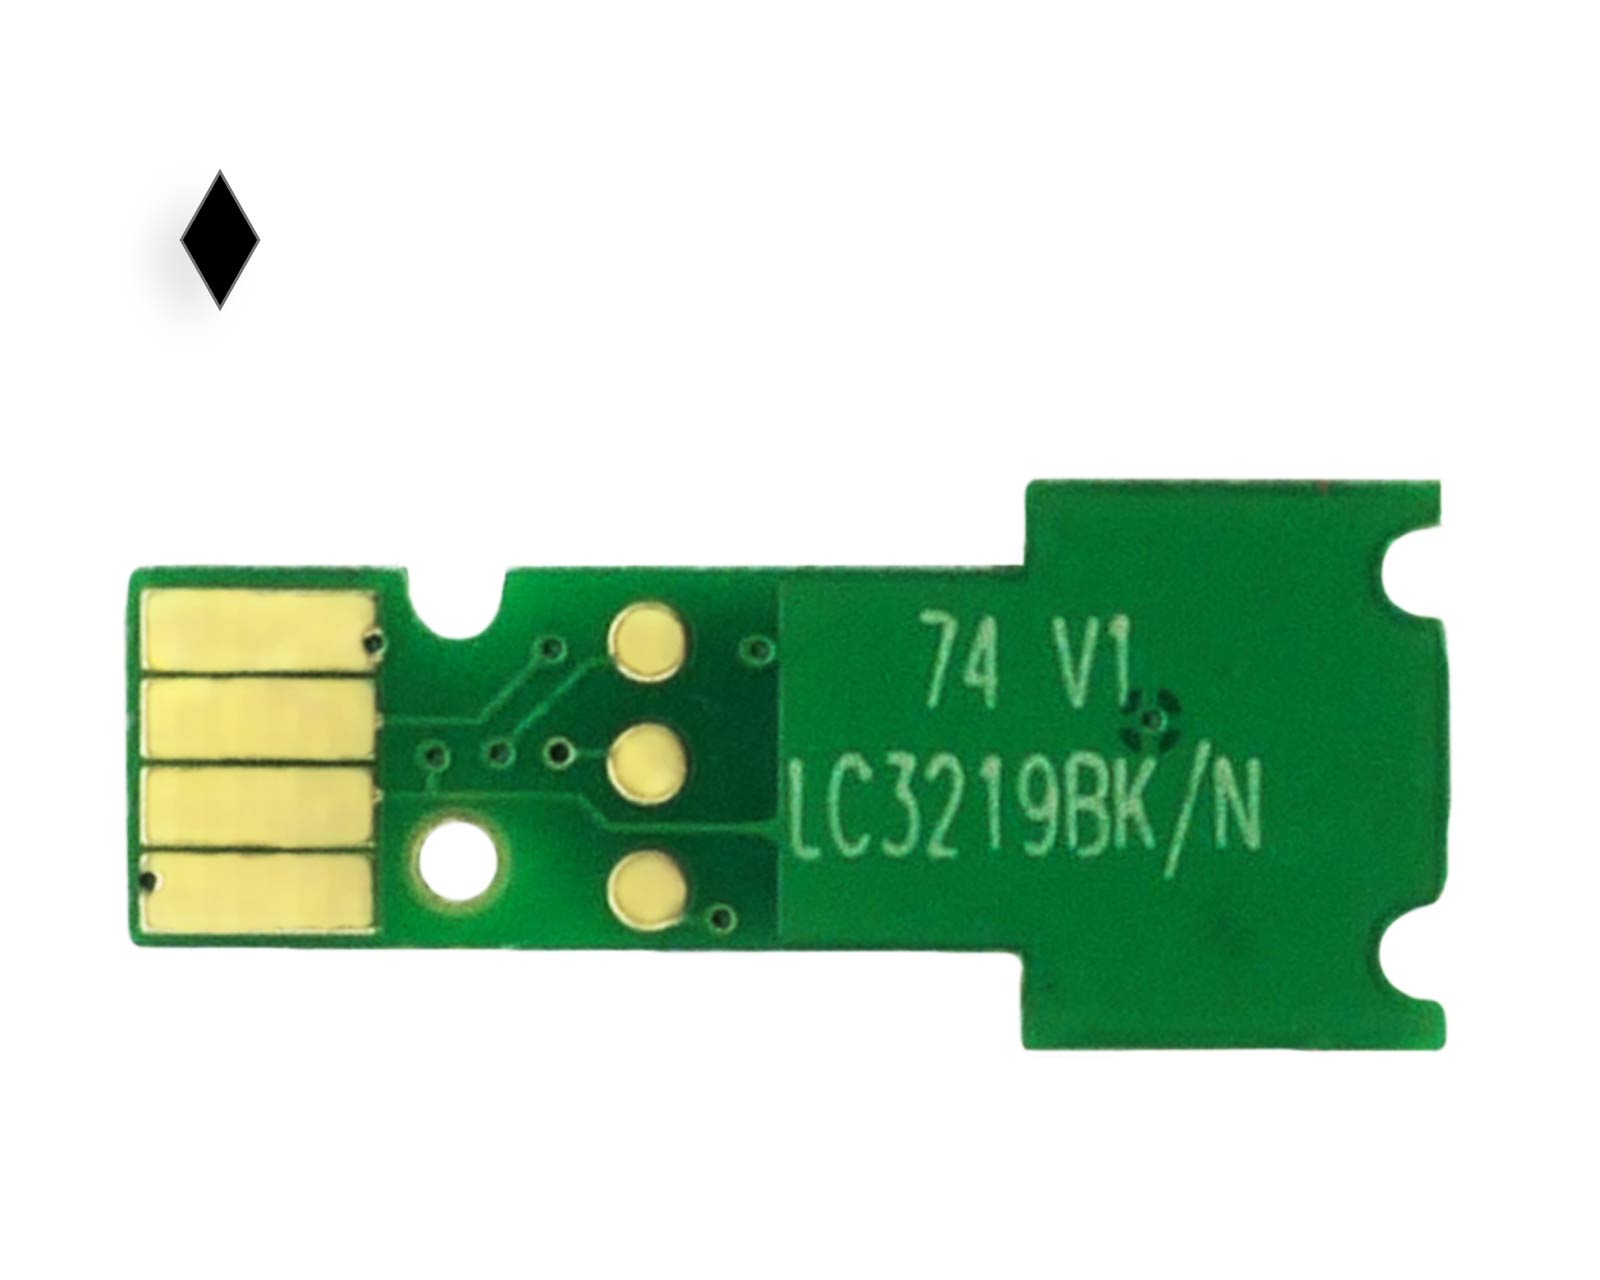 Chip alternativo per cartuccia d'inchiostro compatibile Brother LC-3219 XL XL BK nero